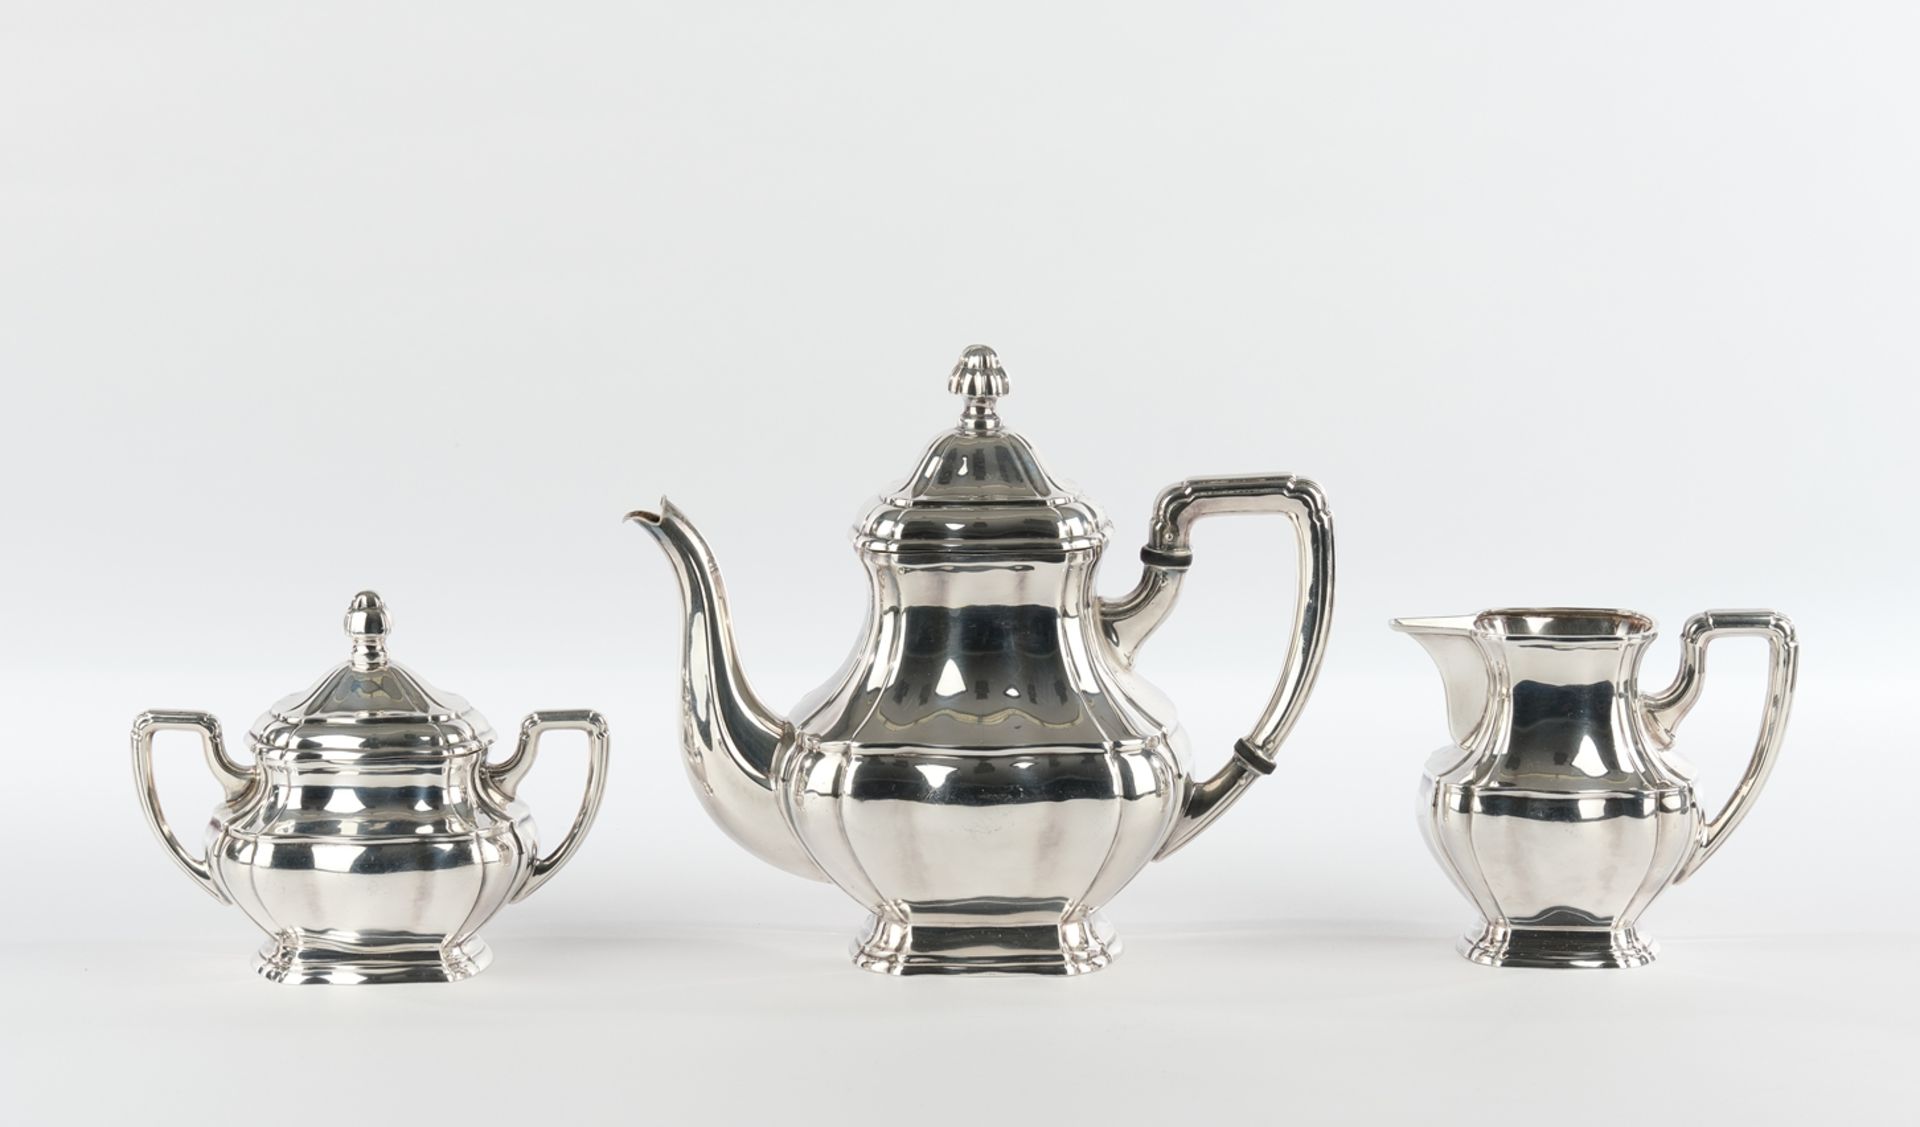 Teekanne, Sahnegießer, Zuckerdose, Silber 925, Emil Hermann, vierseitig gebauchte Gefäße mit vertik